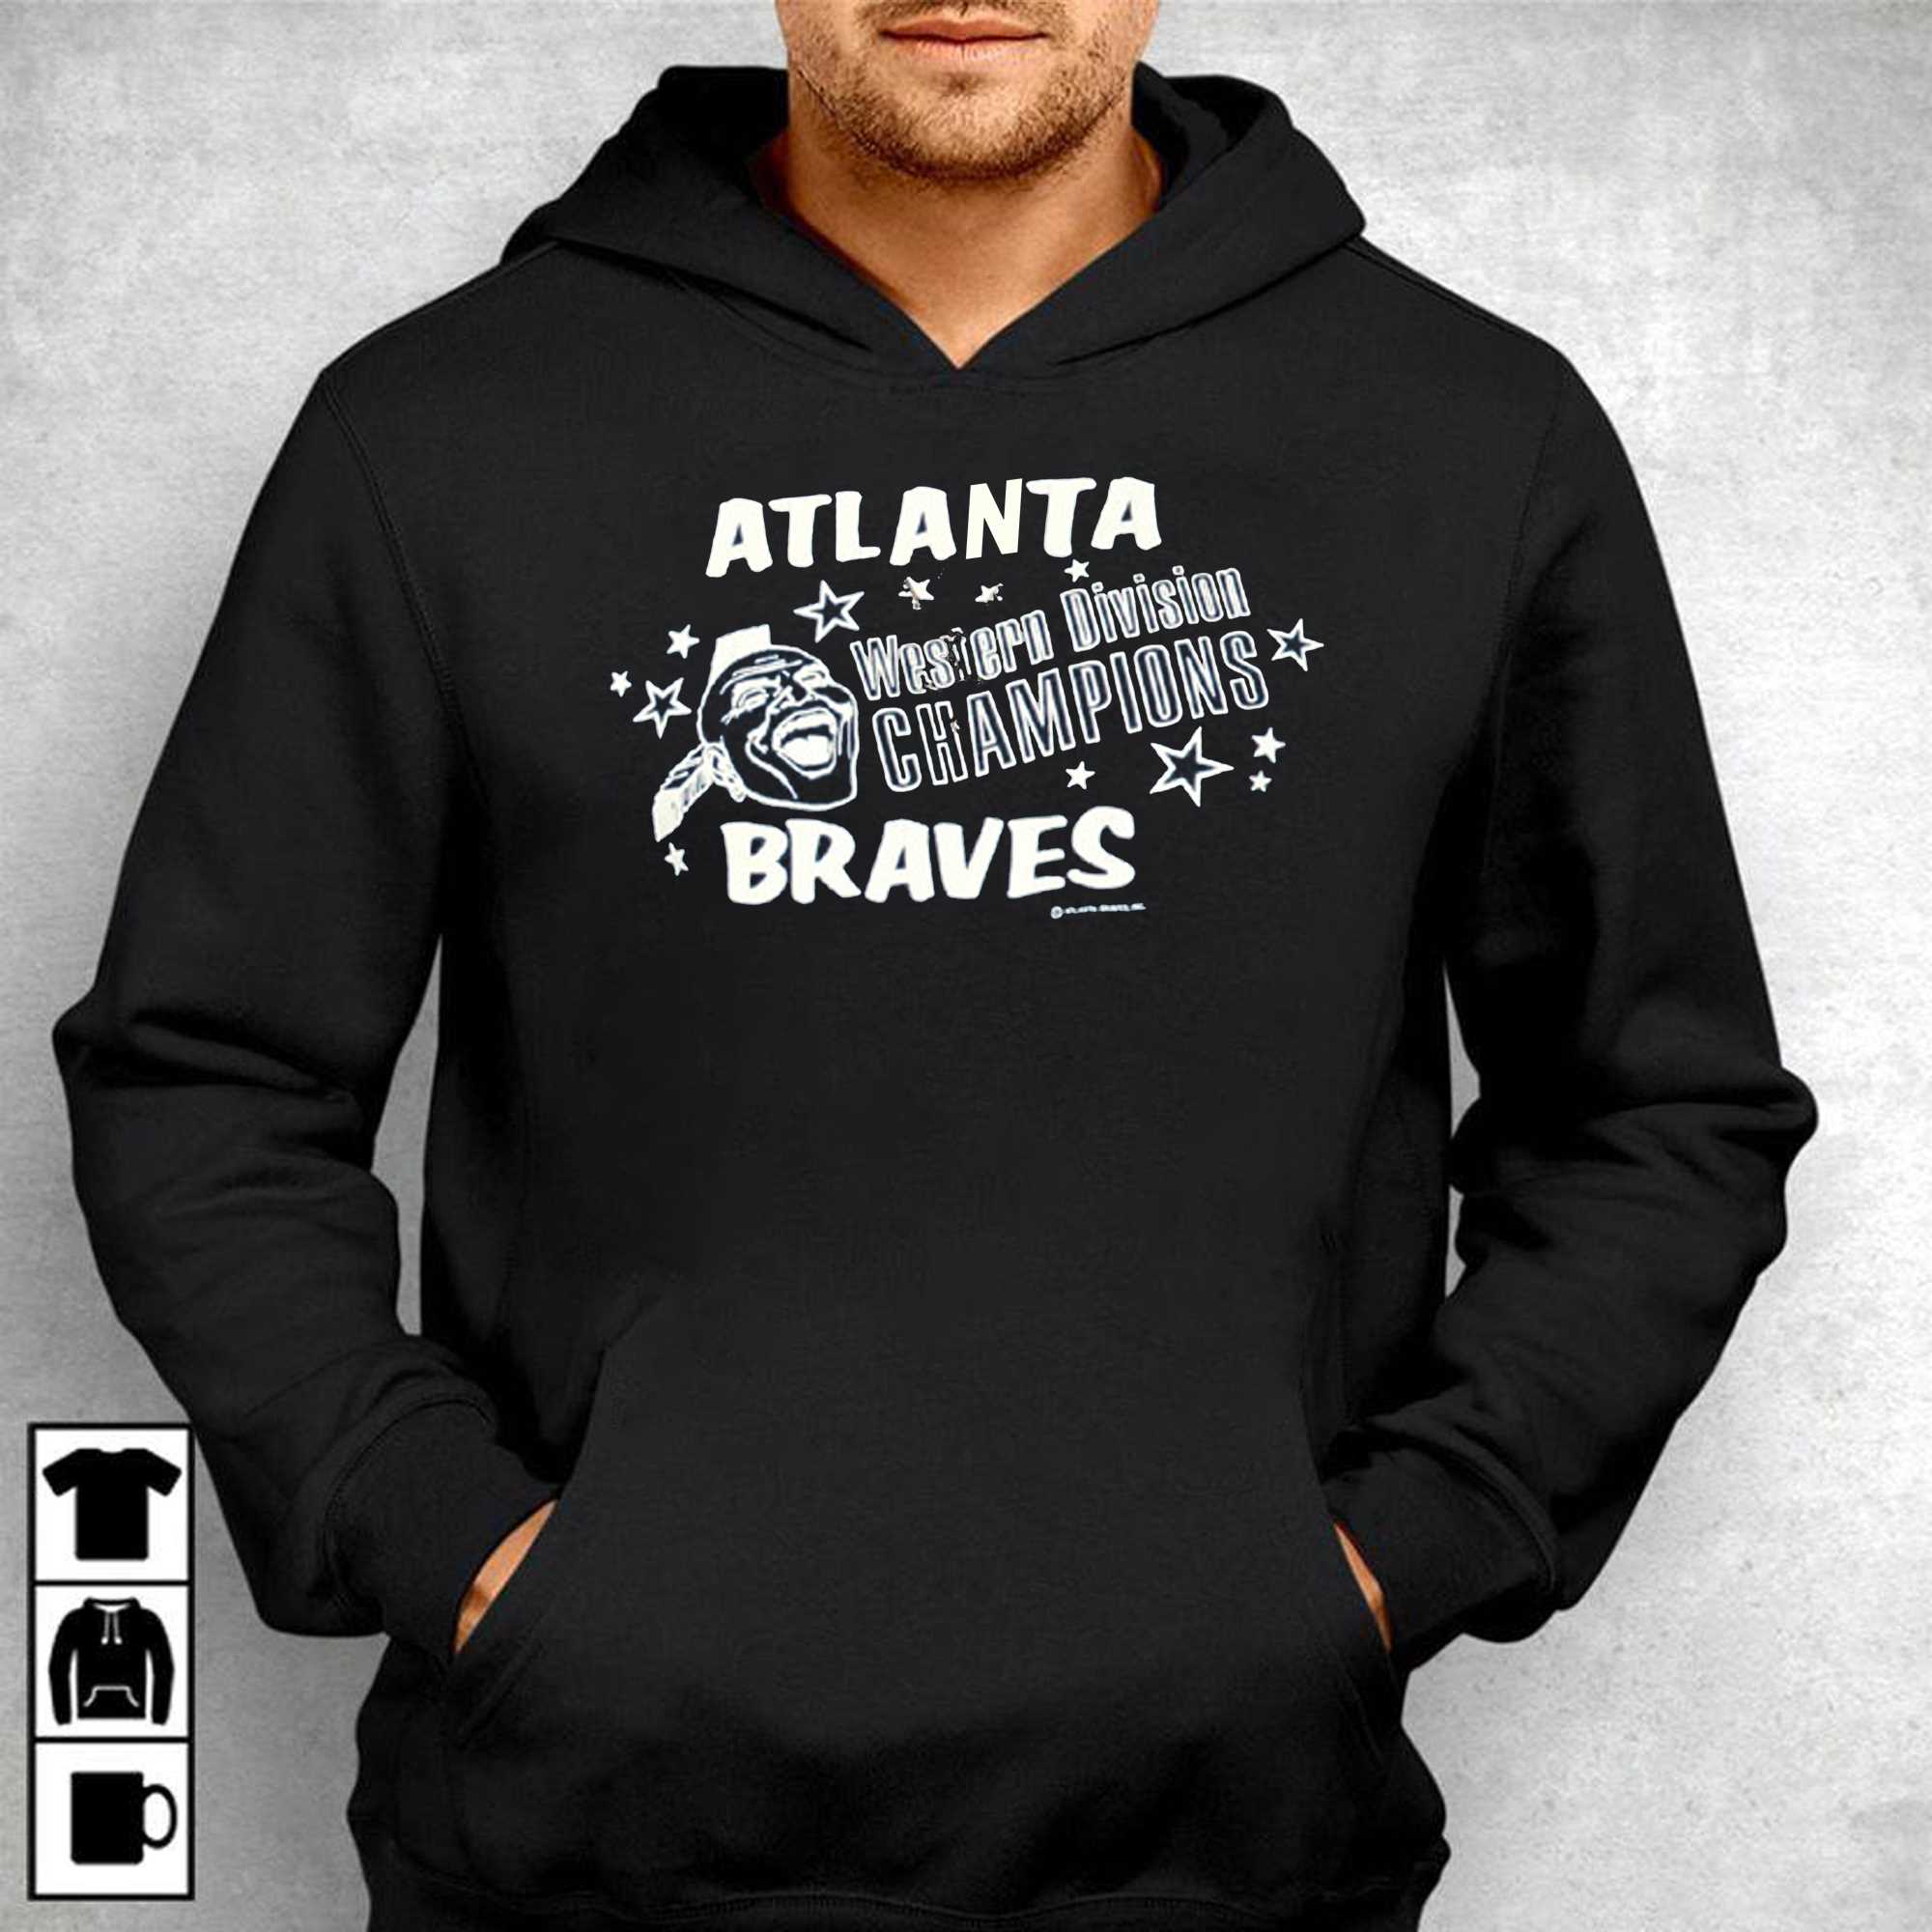 Atlanta Braves Western Division Champion Shirt - Shibtee Clothing